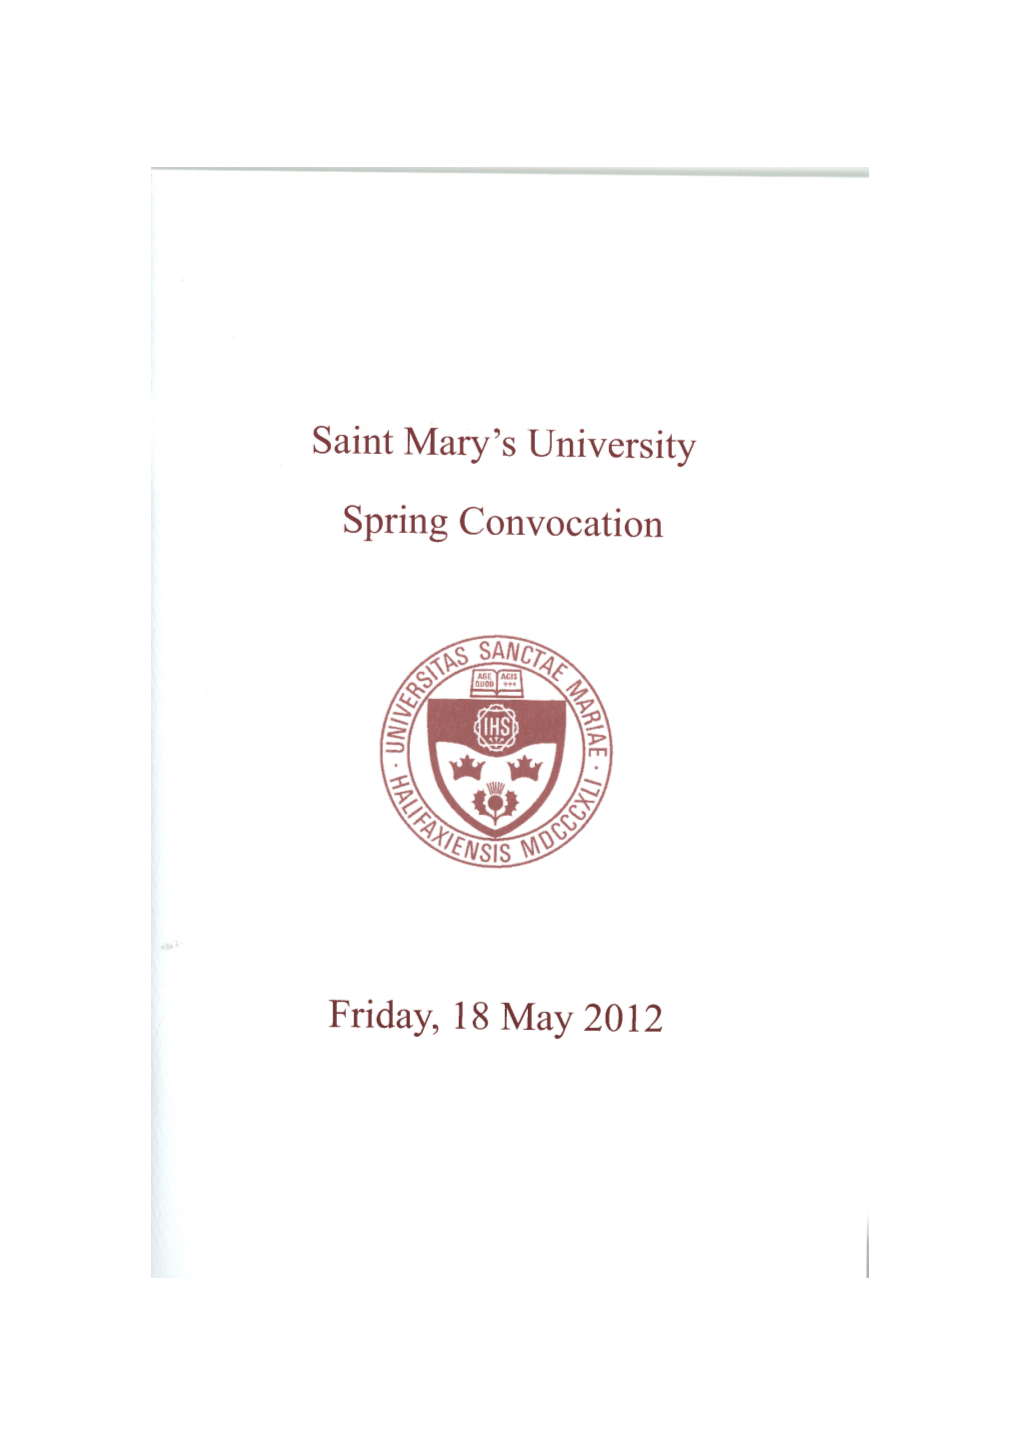 Saint Mary's University Spring Convocation Friday, 18 May 2012